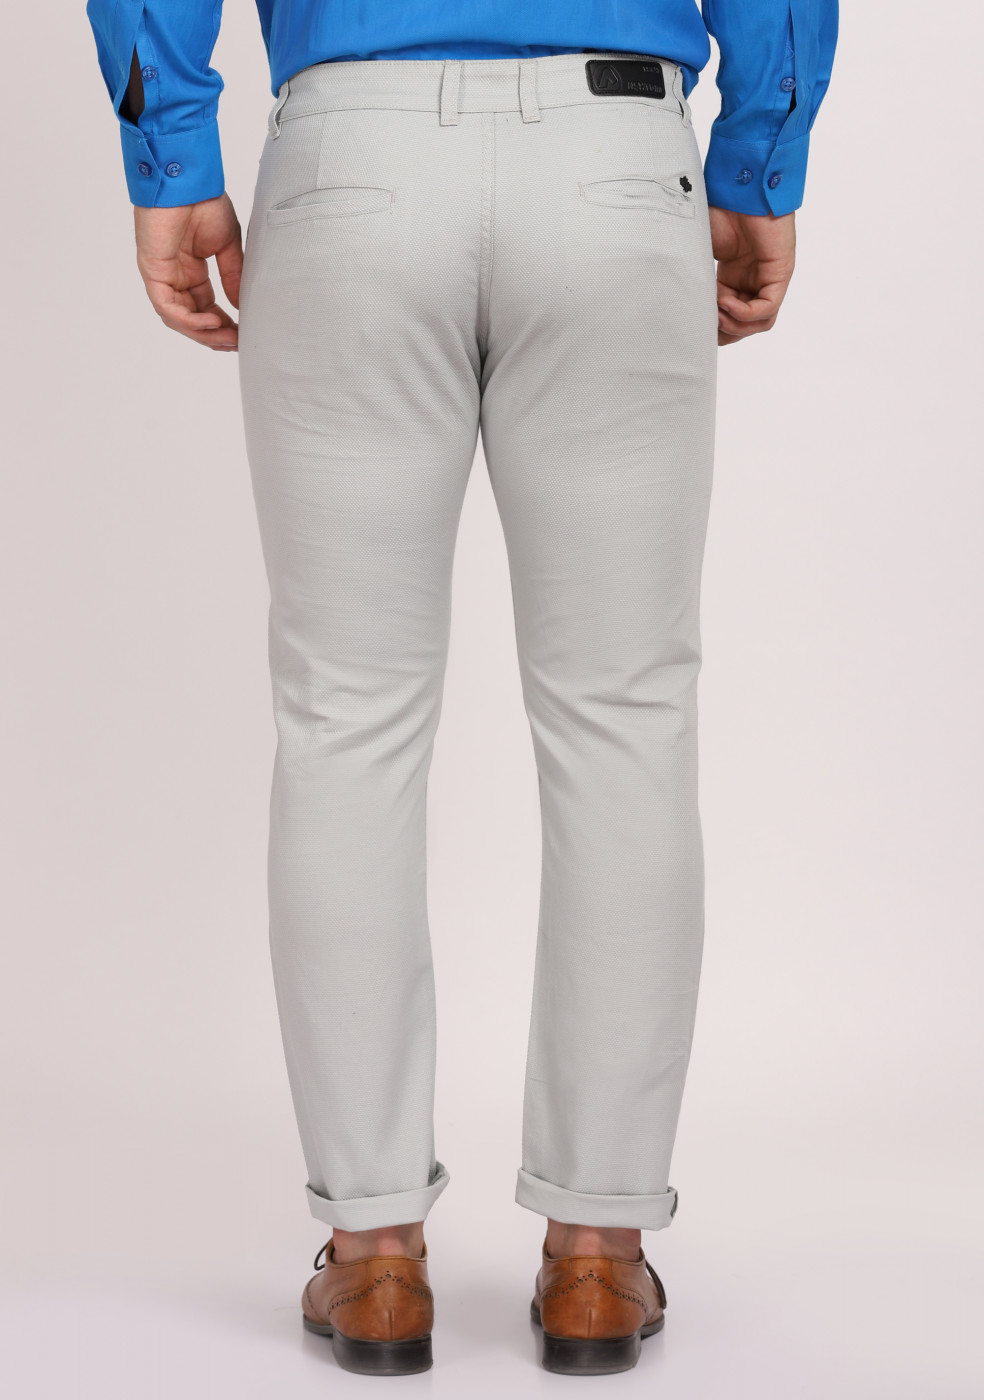 ASHTOM Light Blue Formal Cotton Trouser Regular Fit For Men